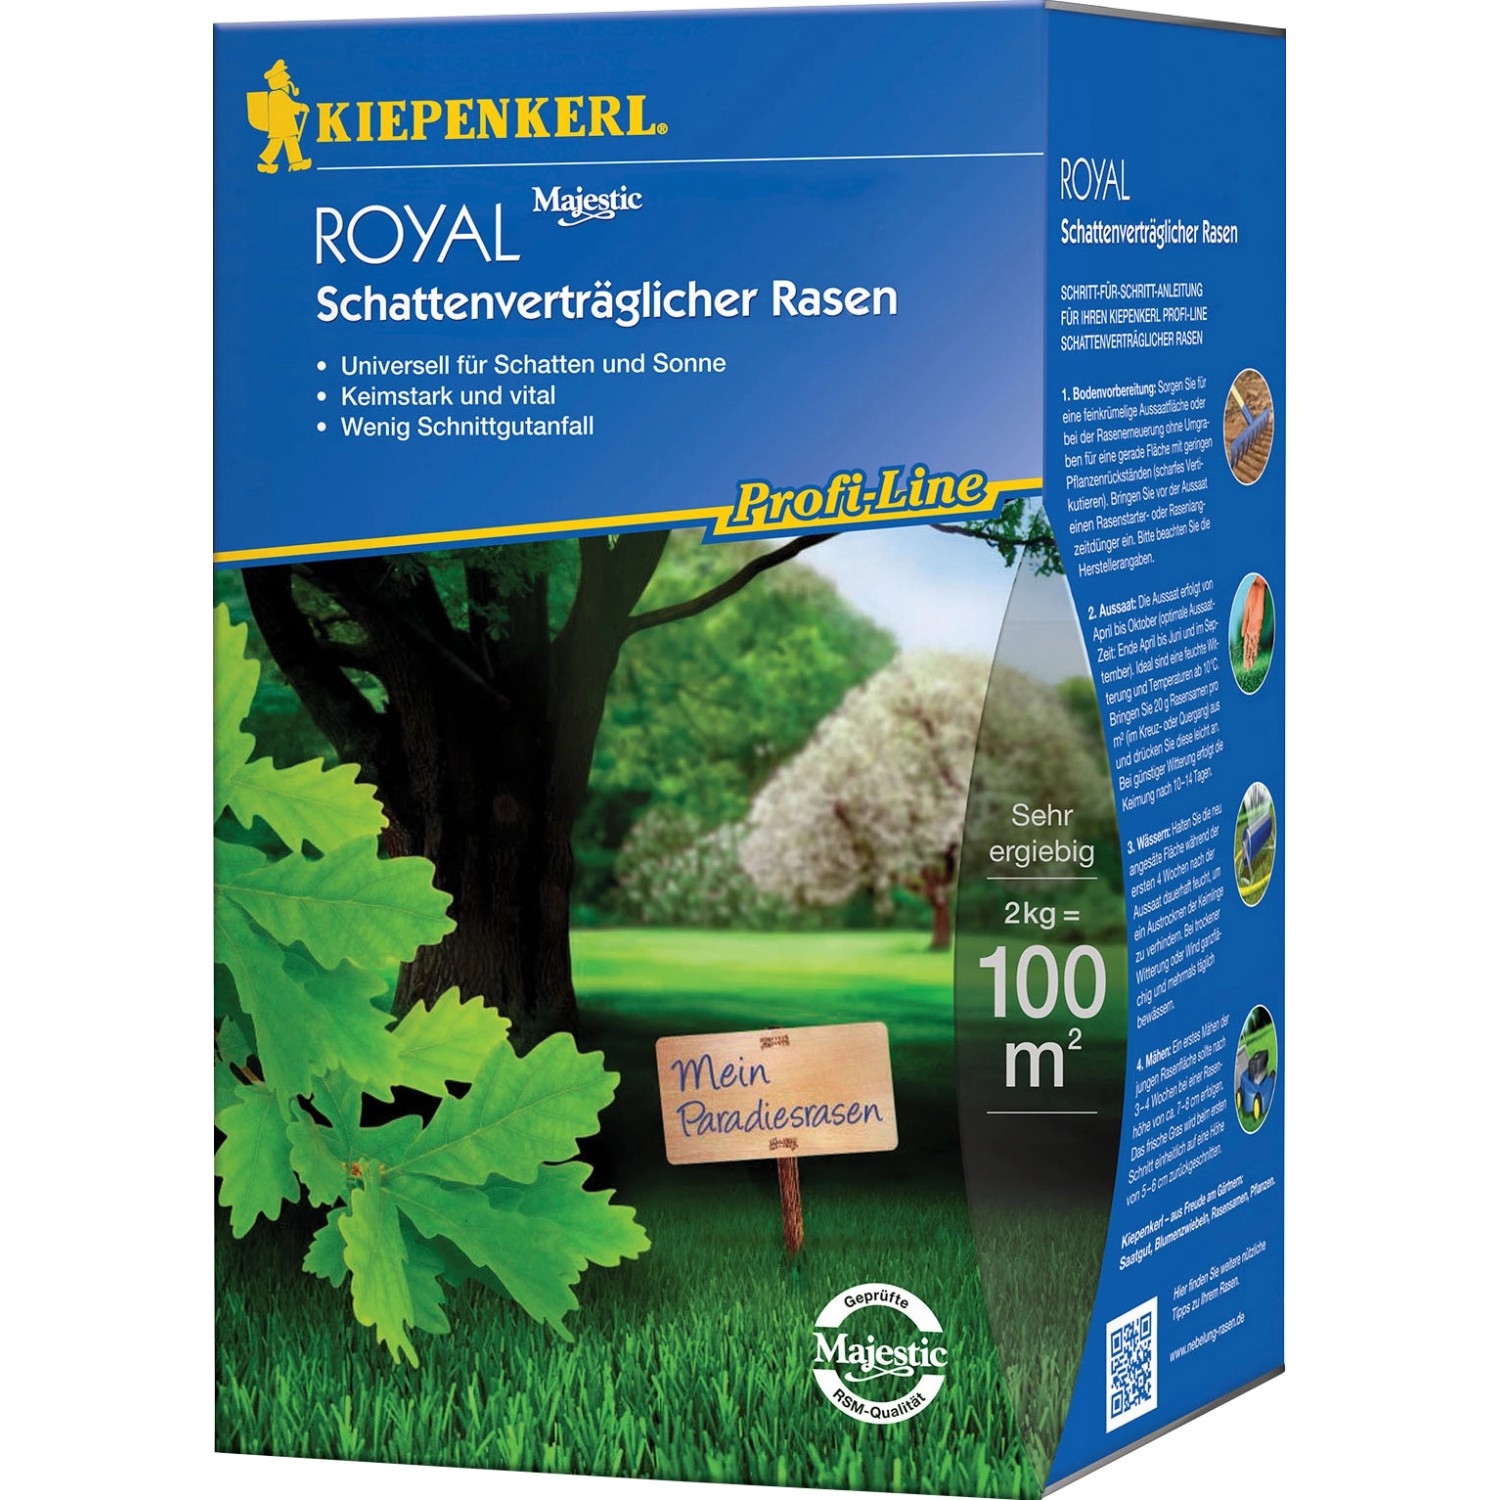 Kiepenkerl Schattenverträglicher Rasen Profi-Line Royal 2 kg von Kiepenkerl